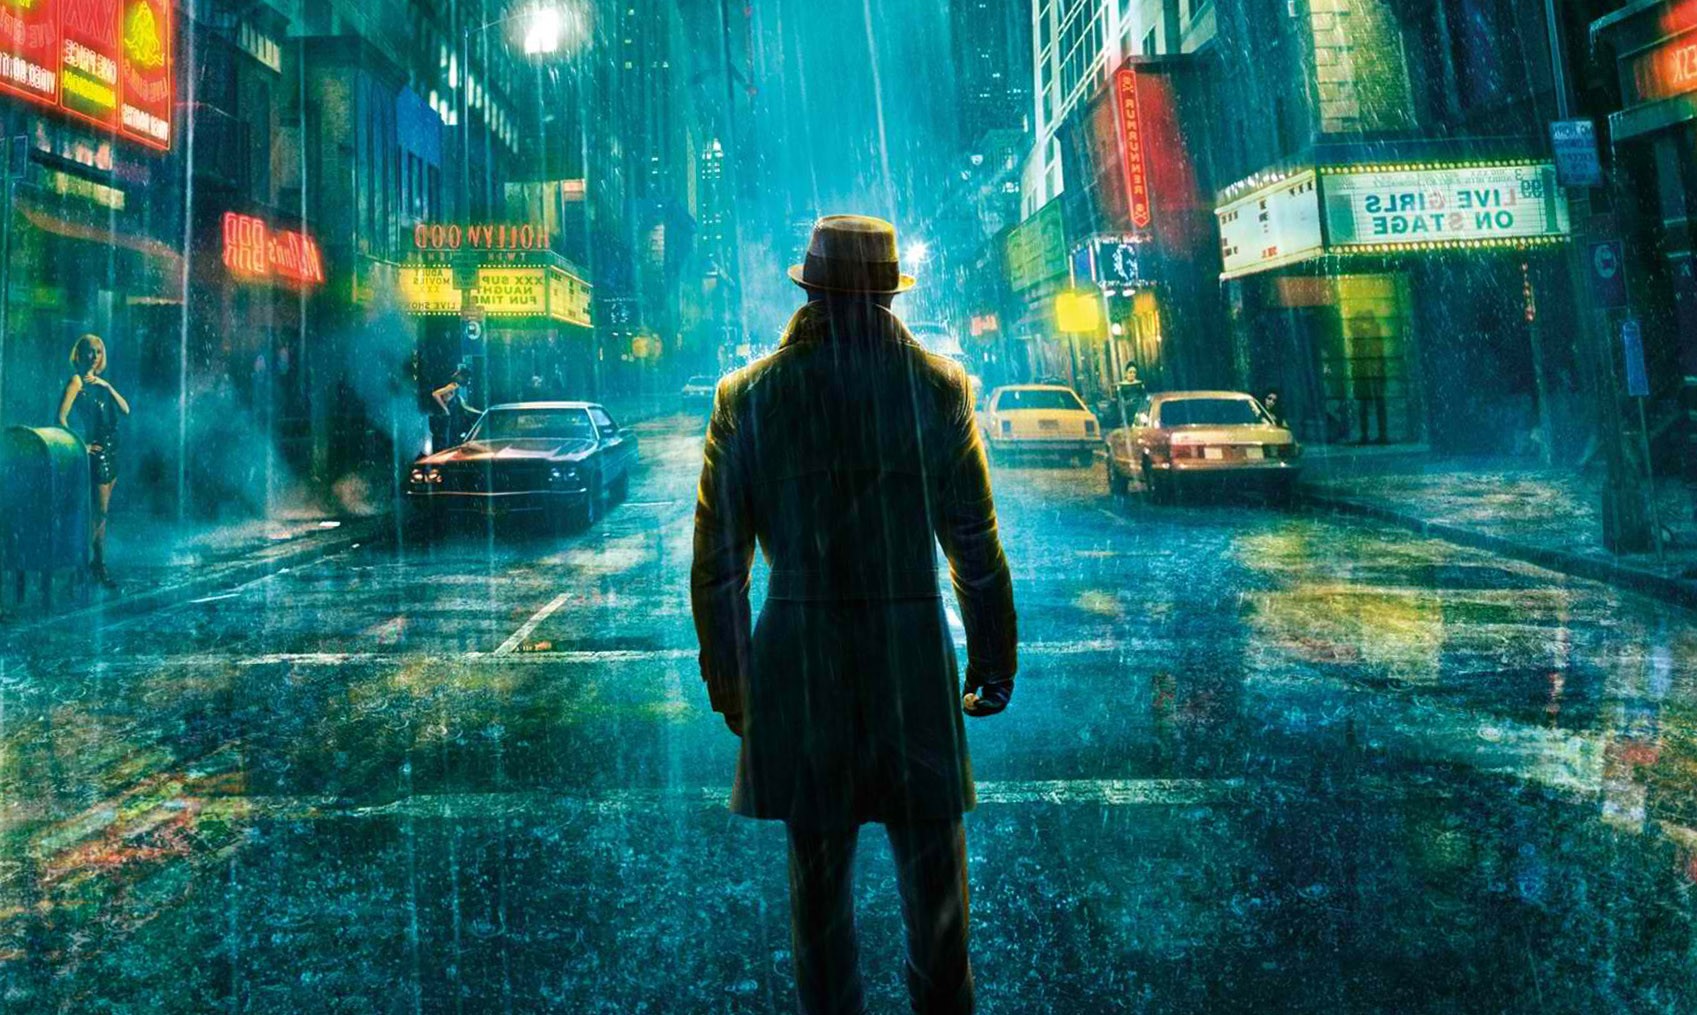 hero movie wallpaper,lluvia,área urbana,oscuridad,calle,composición digital